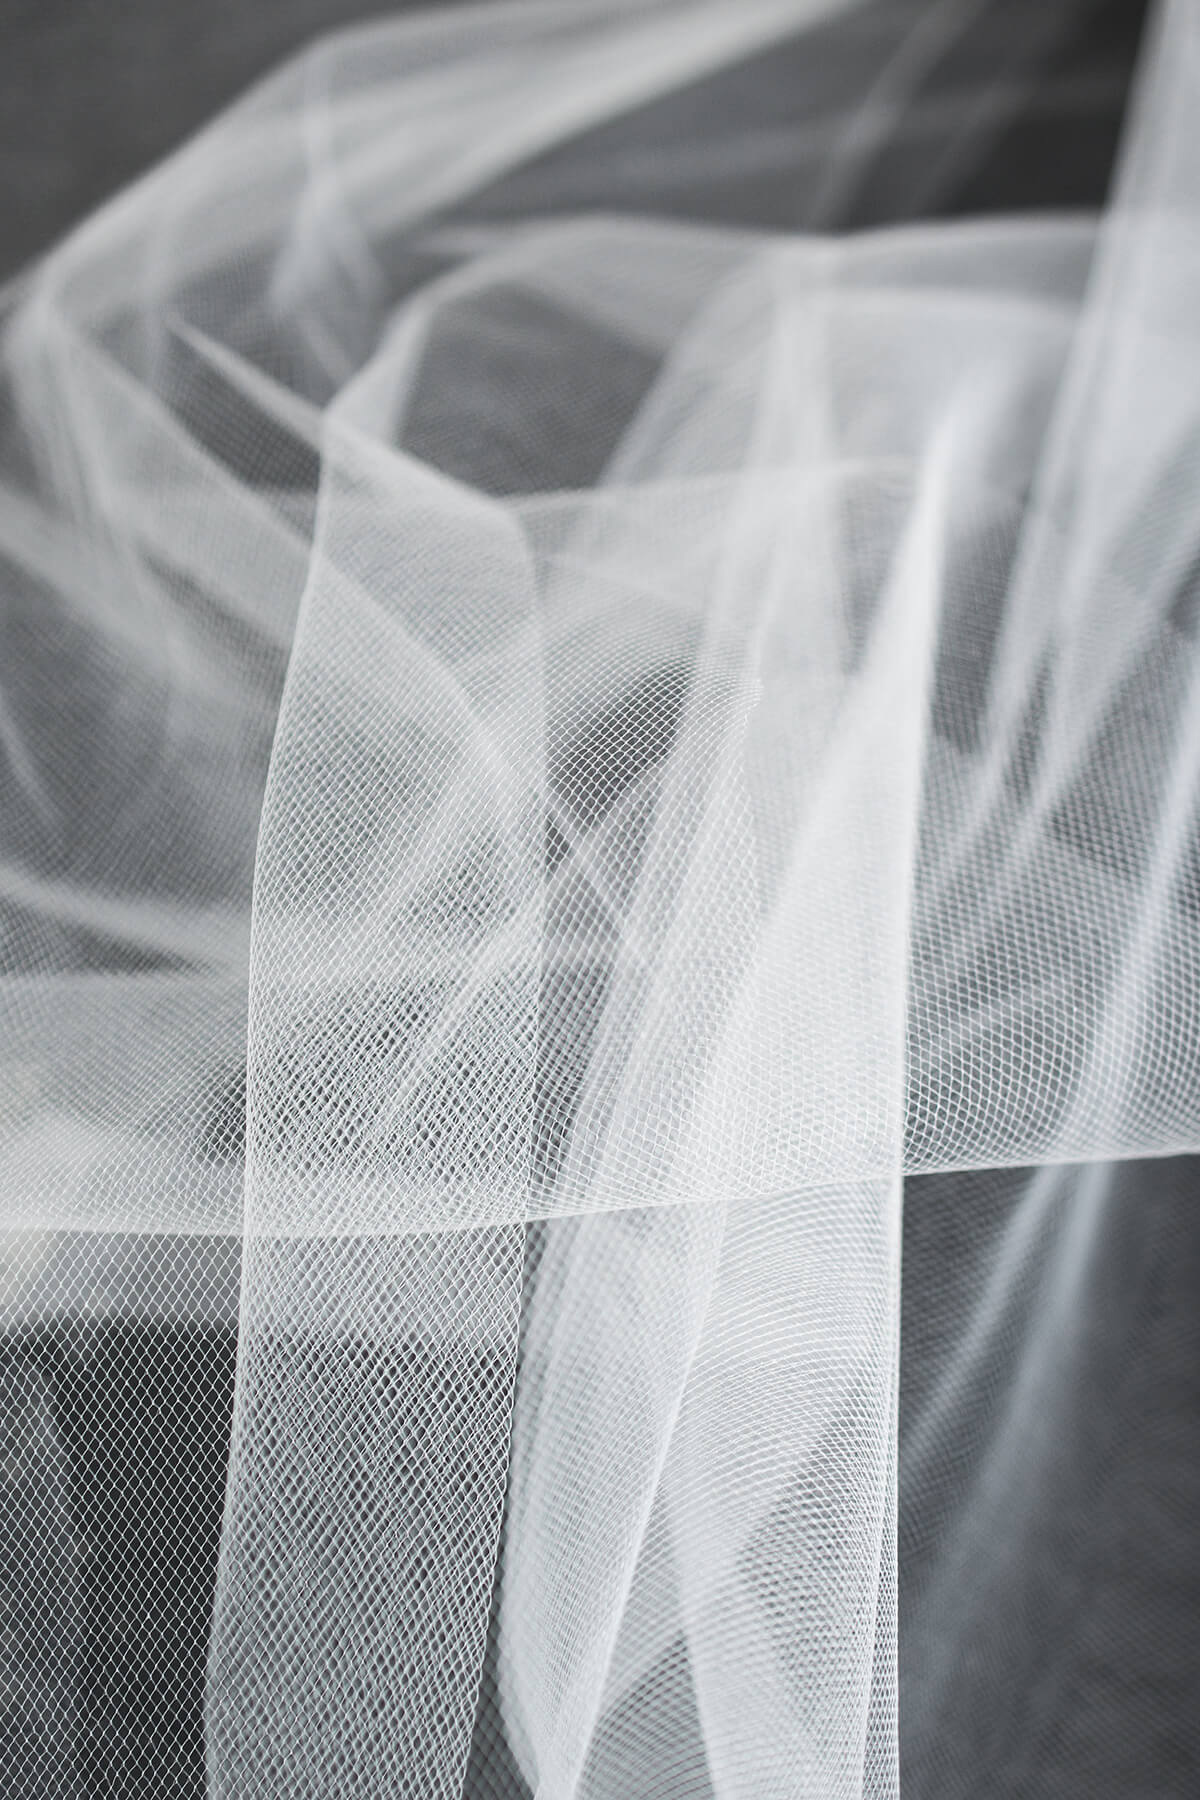 Fashionable Short Wedding Dresses 2015 White Lace Bridal